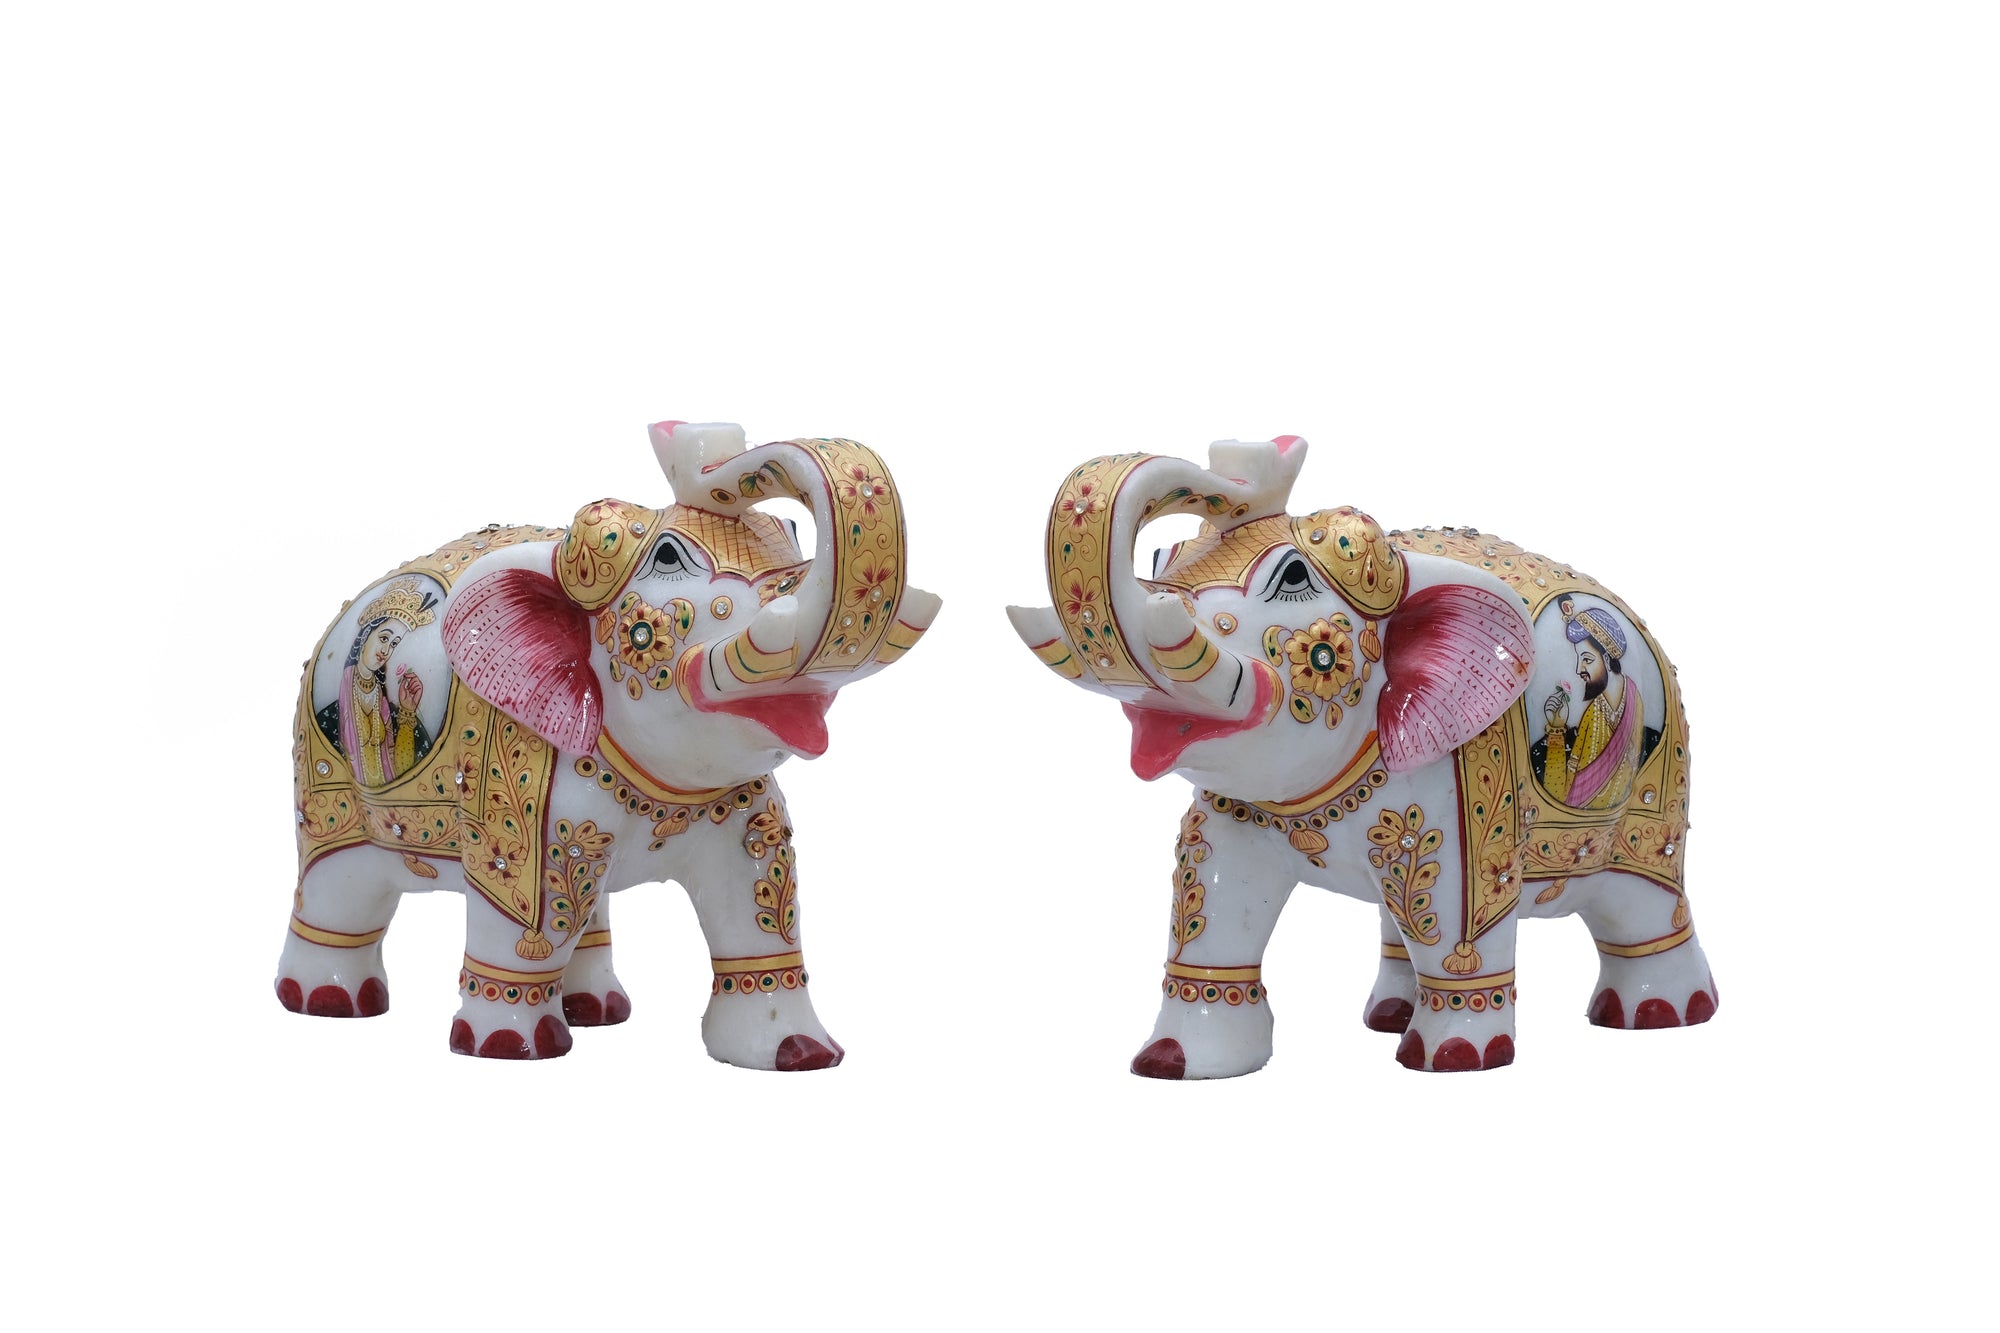 Marble Elephants with Mumtaz and Shahajahan Portraits on their Caparison